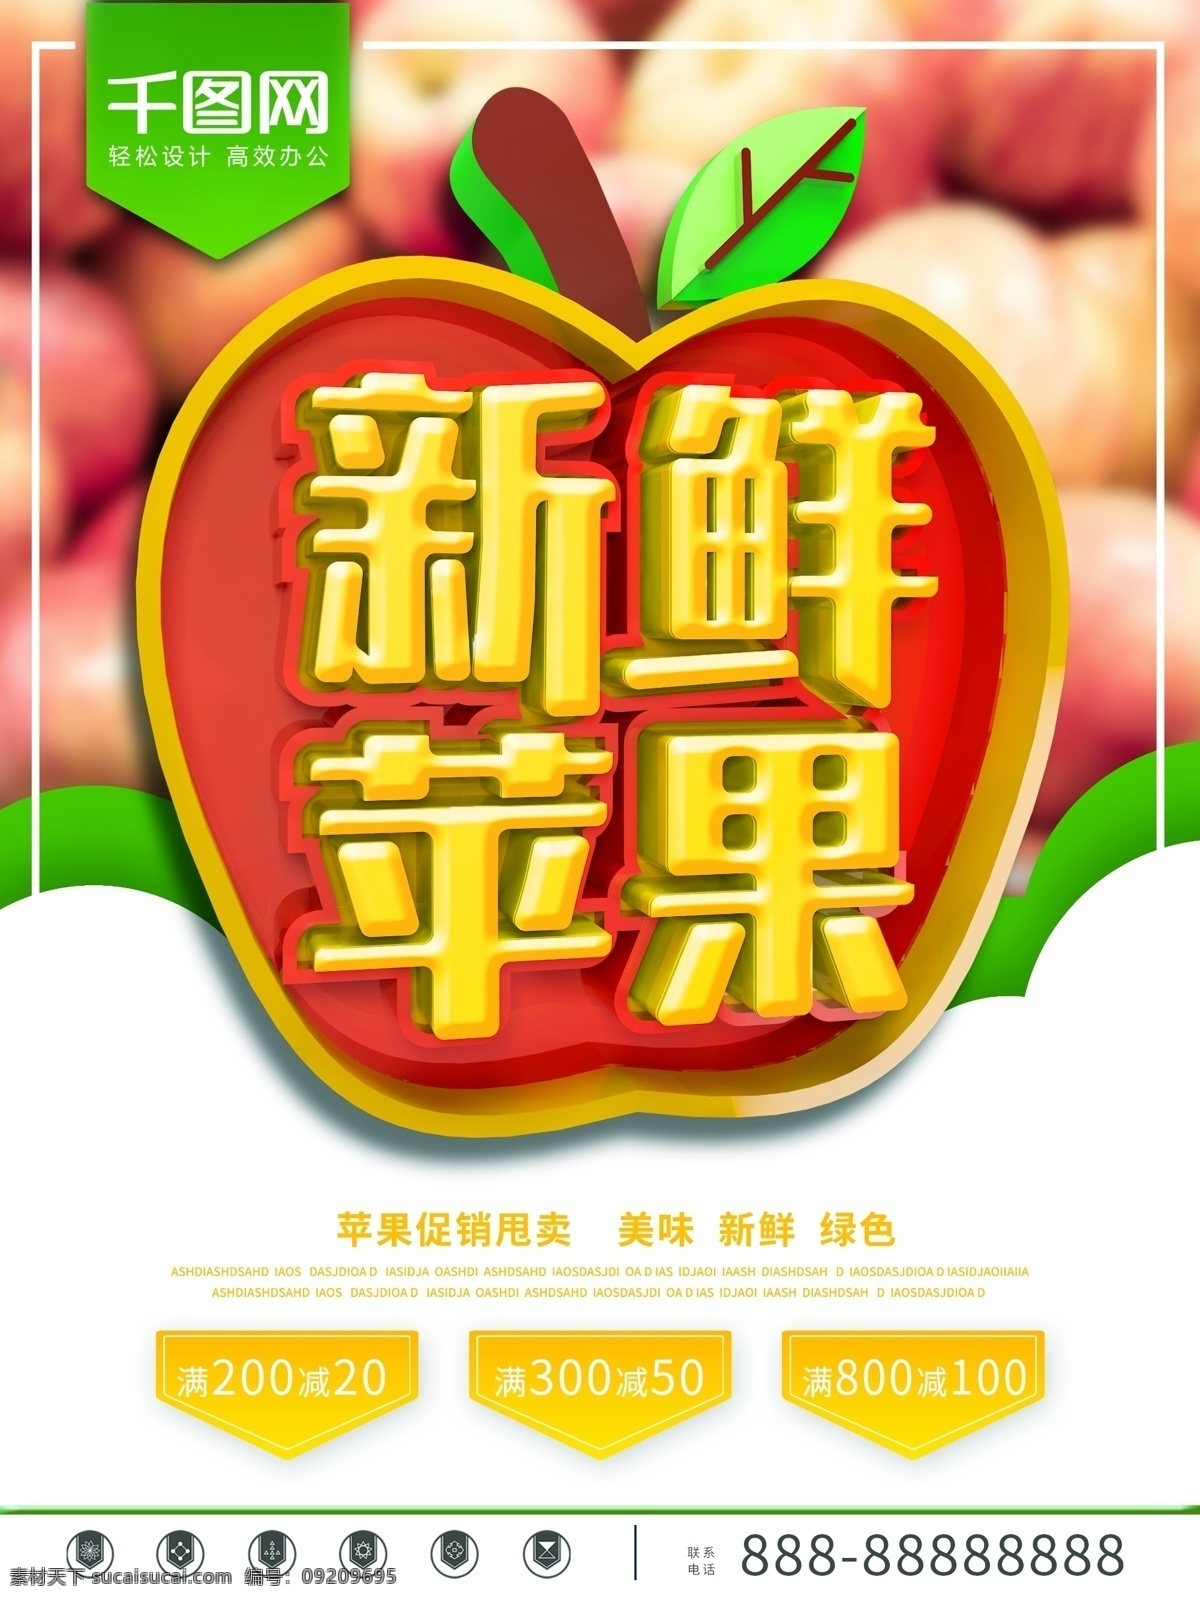 c4d 创意 促销 新鲜 苹果 海报 平安果 促销海报 苹果背景 新鲜水果 水果 水果促销 苹果促销 新鲜苹果 美味苹果 绿色苹果 有机苹果